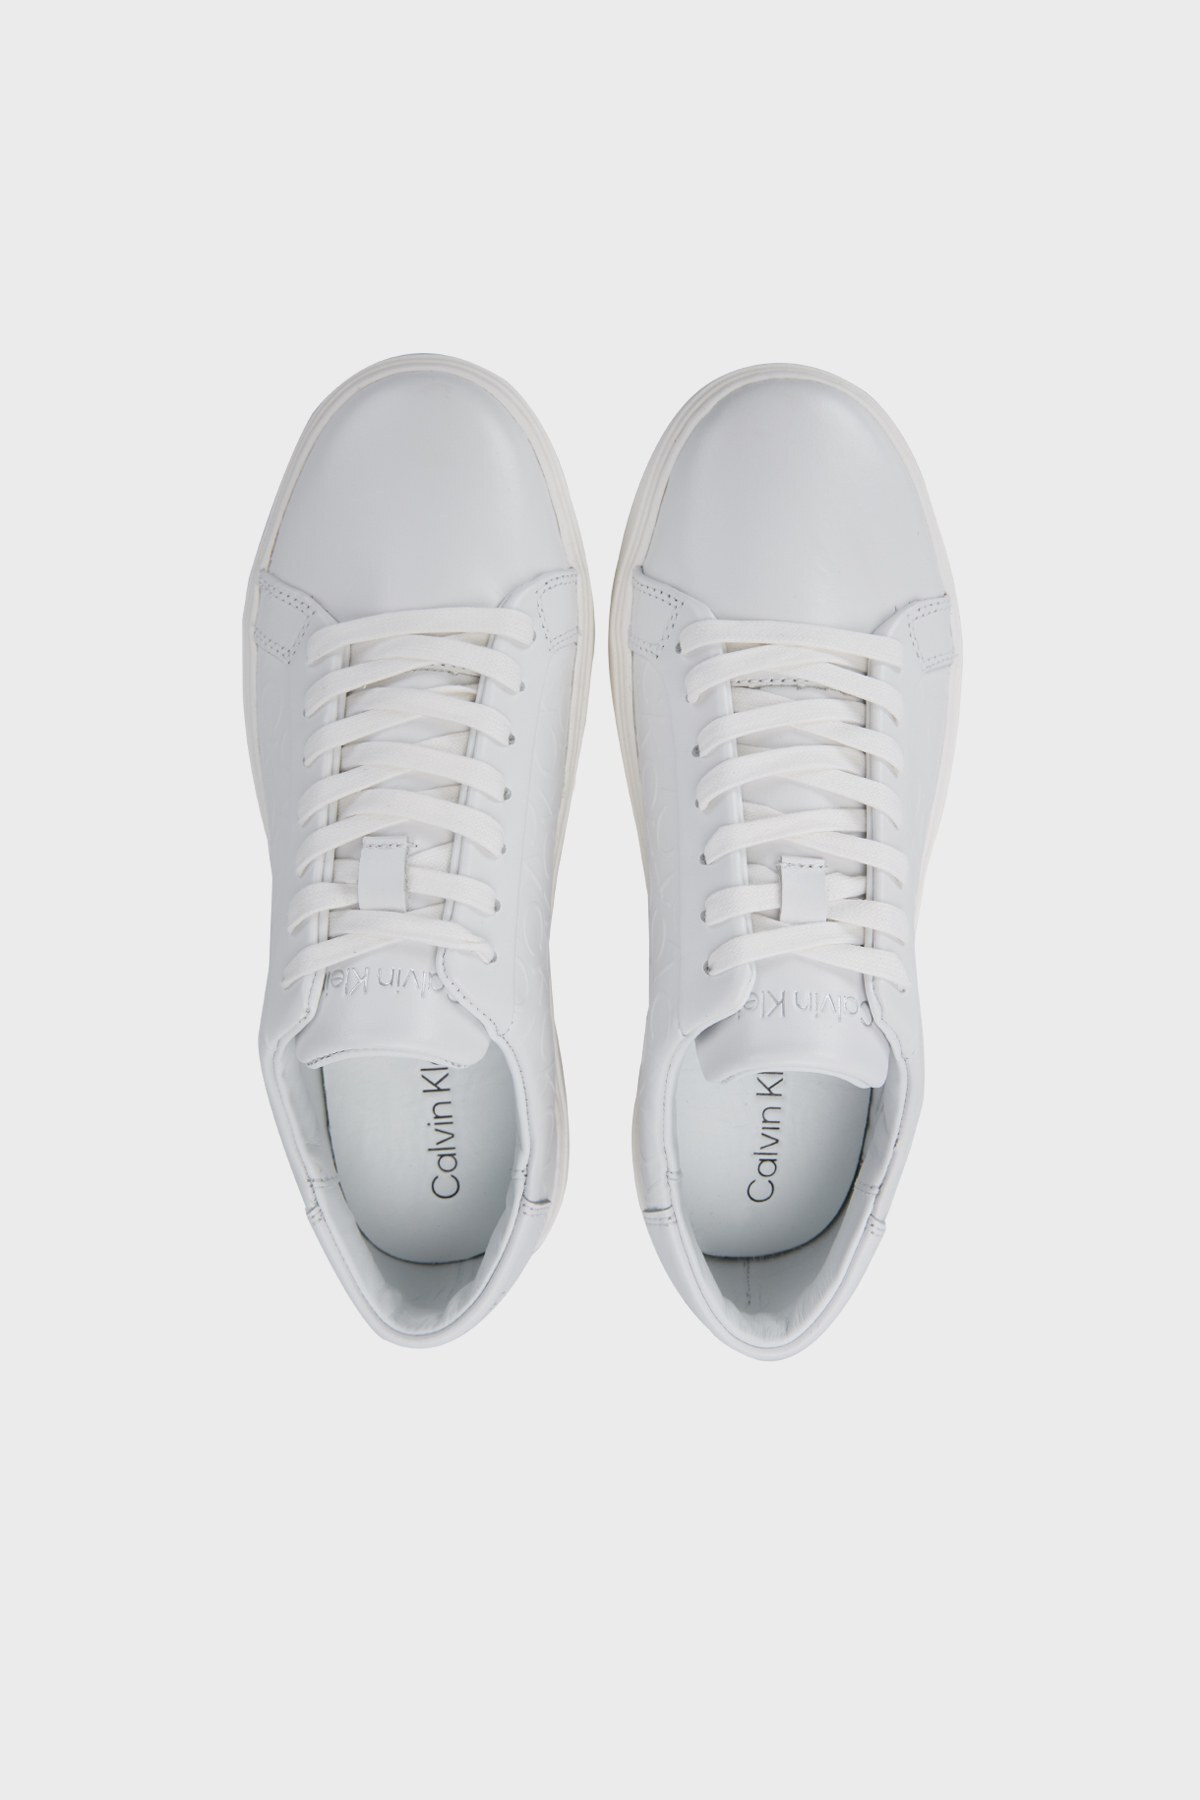 Calvin Klein Logo Baskılı Hakiki Deri Sneaker Erkek Ayakkabı HM0HM00641 01S BEYAZ